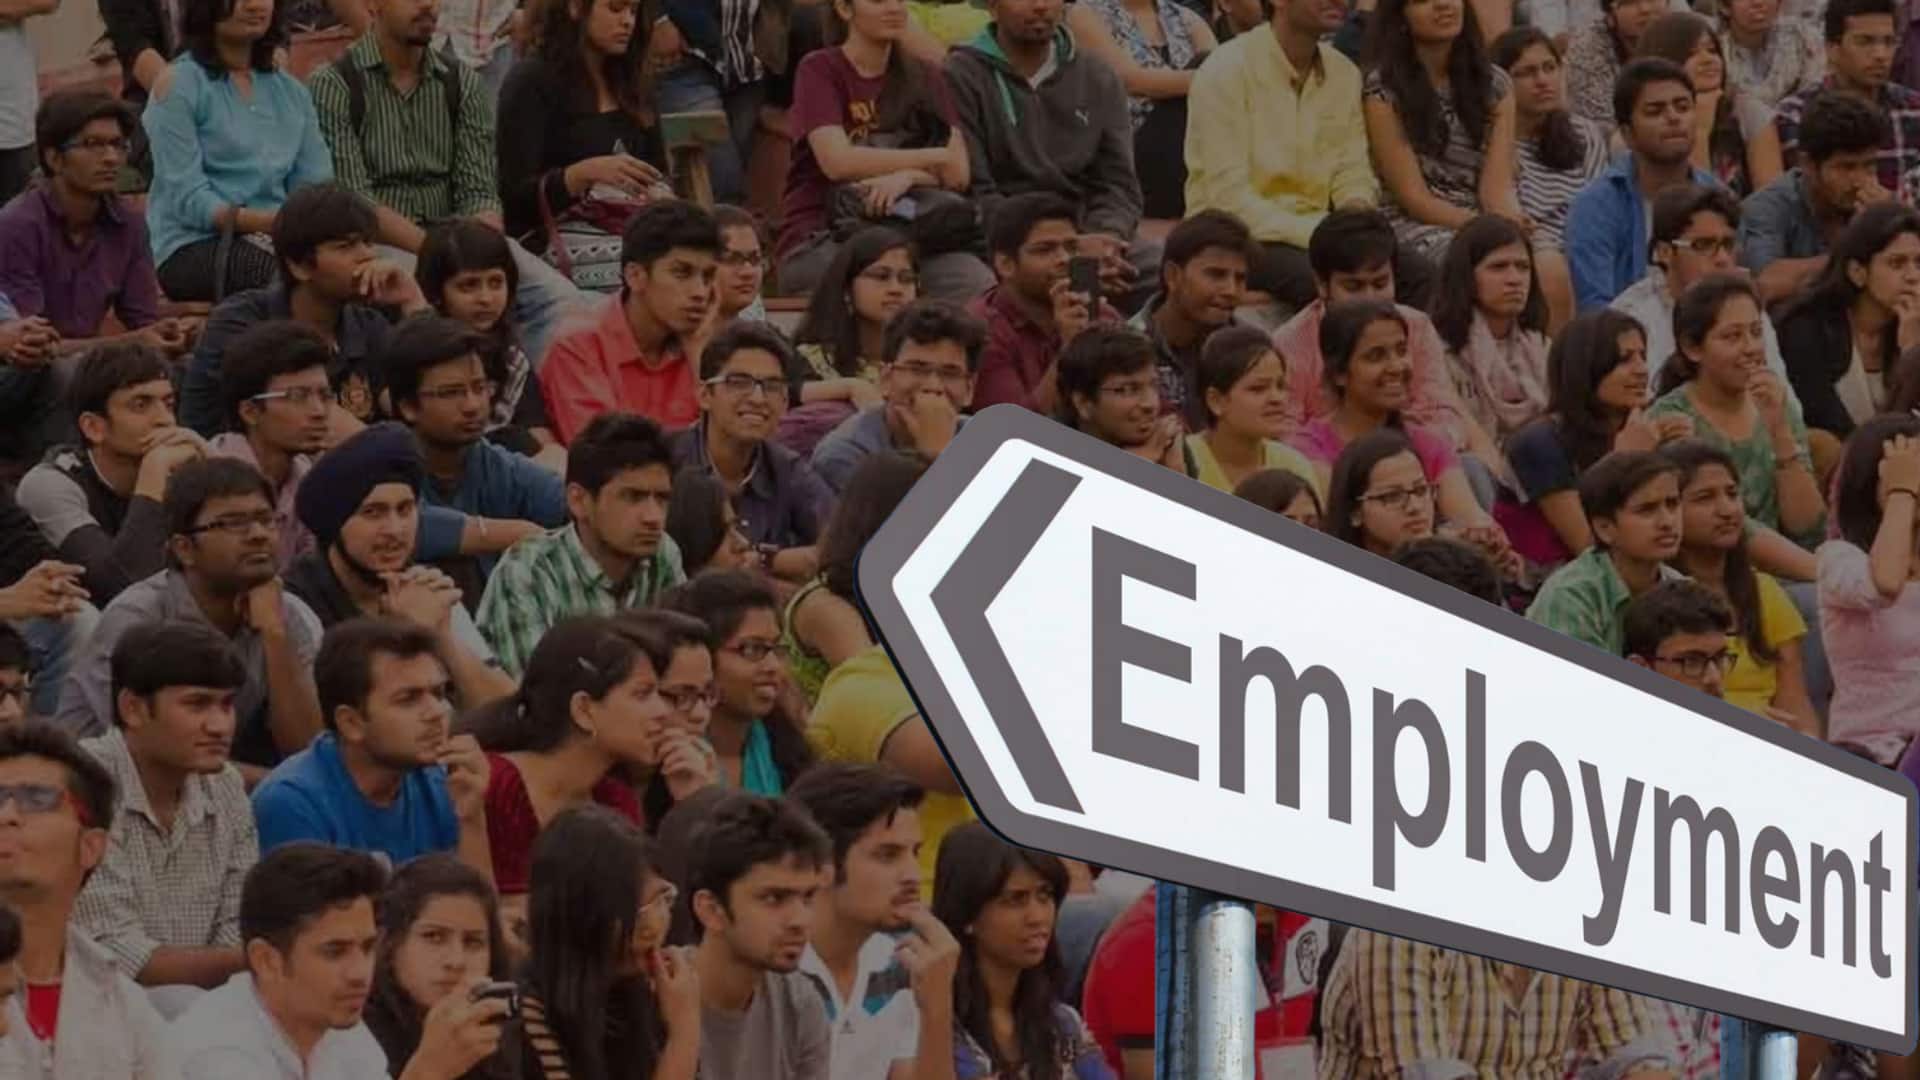 देश में स्नातकों के बीच बेरोजगारी दर घटकर 13.4 प्रतिशत पर पहुंचीं, चंडीगढ़ अव्वल- सर्वे